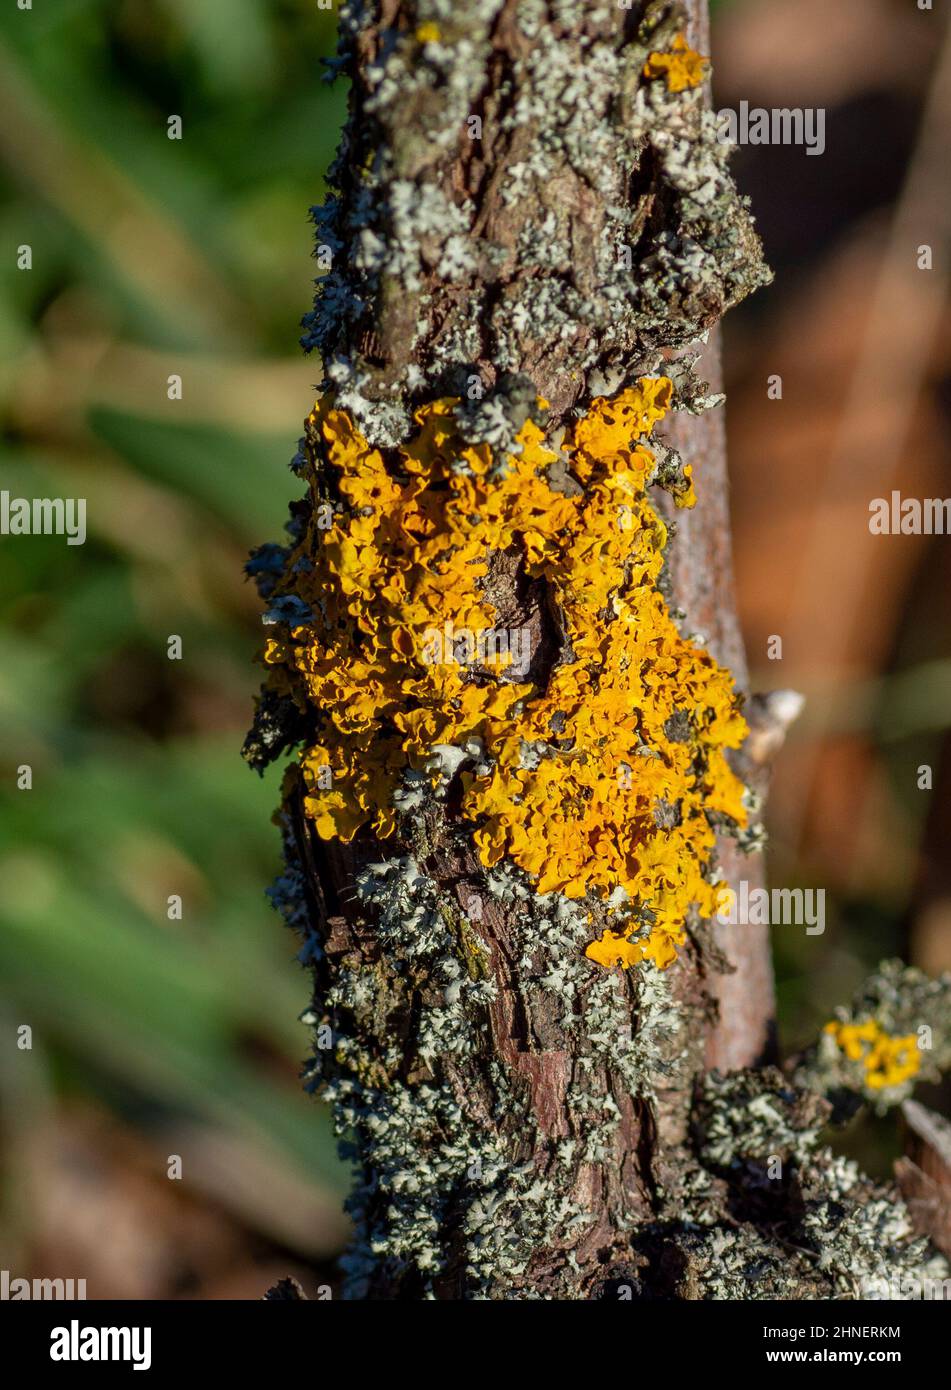 Common orange lichen (Xanthoria parietina), also known as yellow scale, maritime sunburst lichen and shore lichen on the grapevine plant branch. Stock Photo